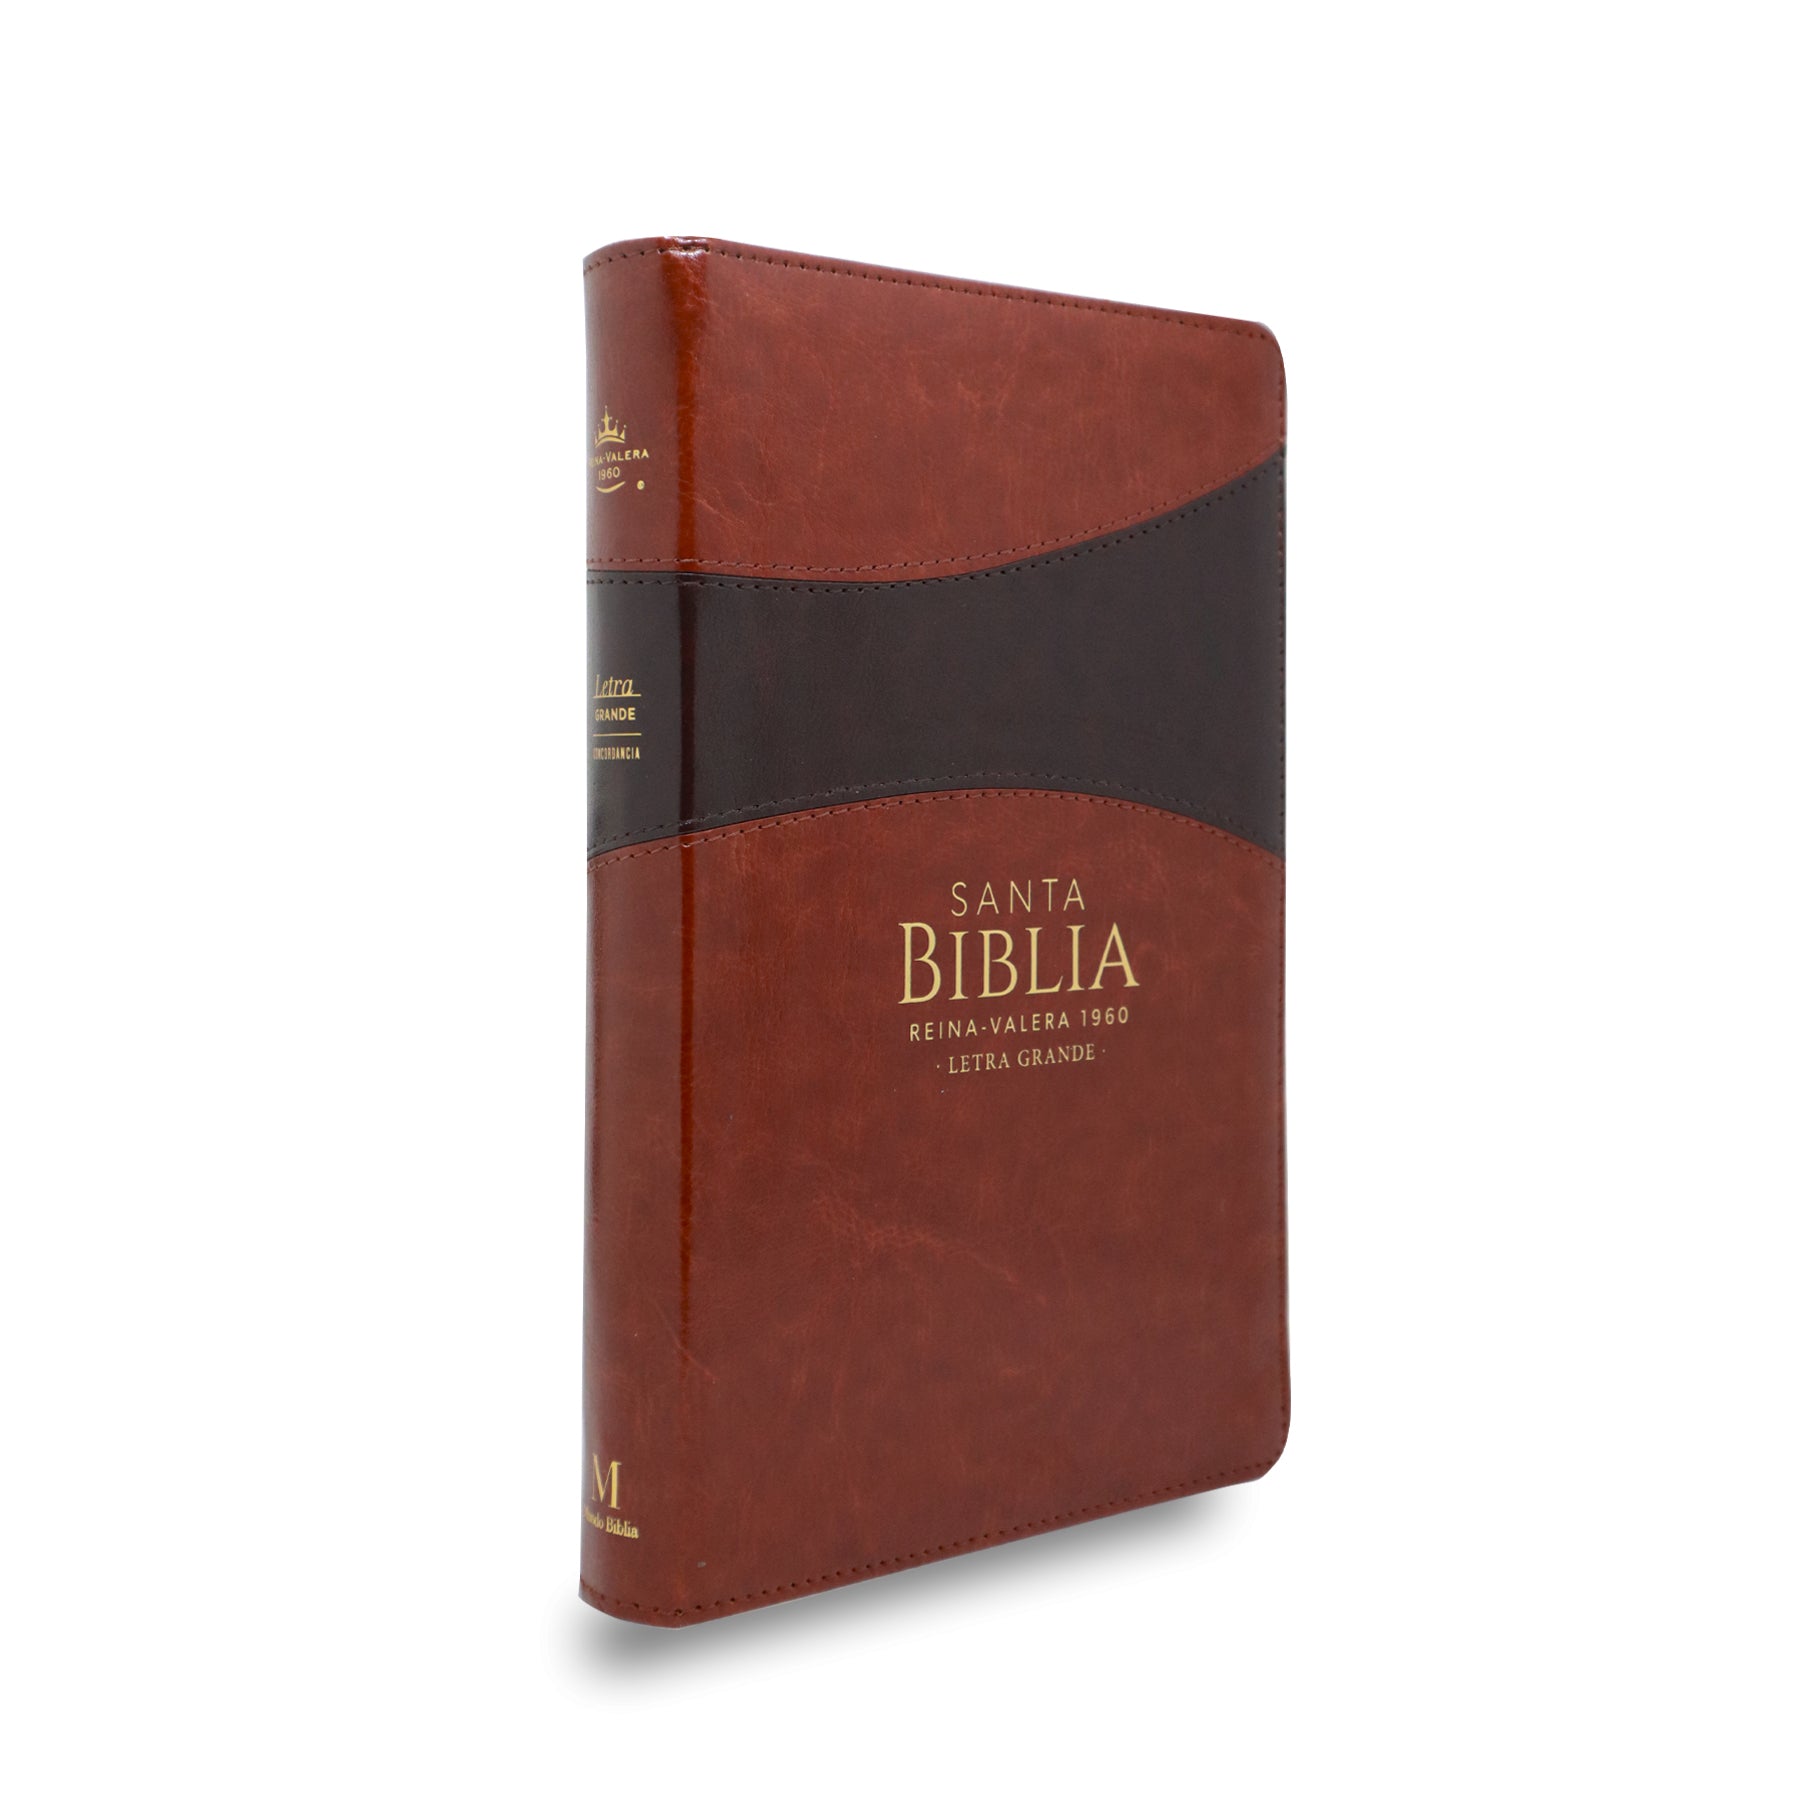 BIBLIA RVR 1960 LETRA GRANDE MANUAL SIMIL PIEL MARRÓN MARRÓN C/CIERRE